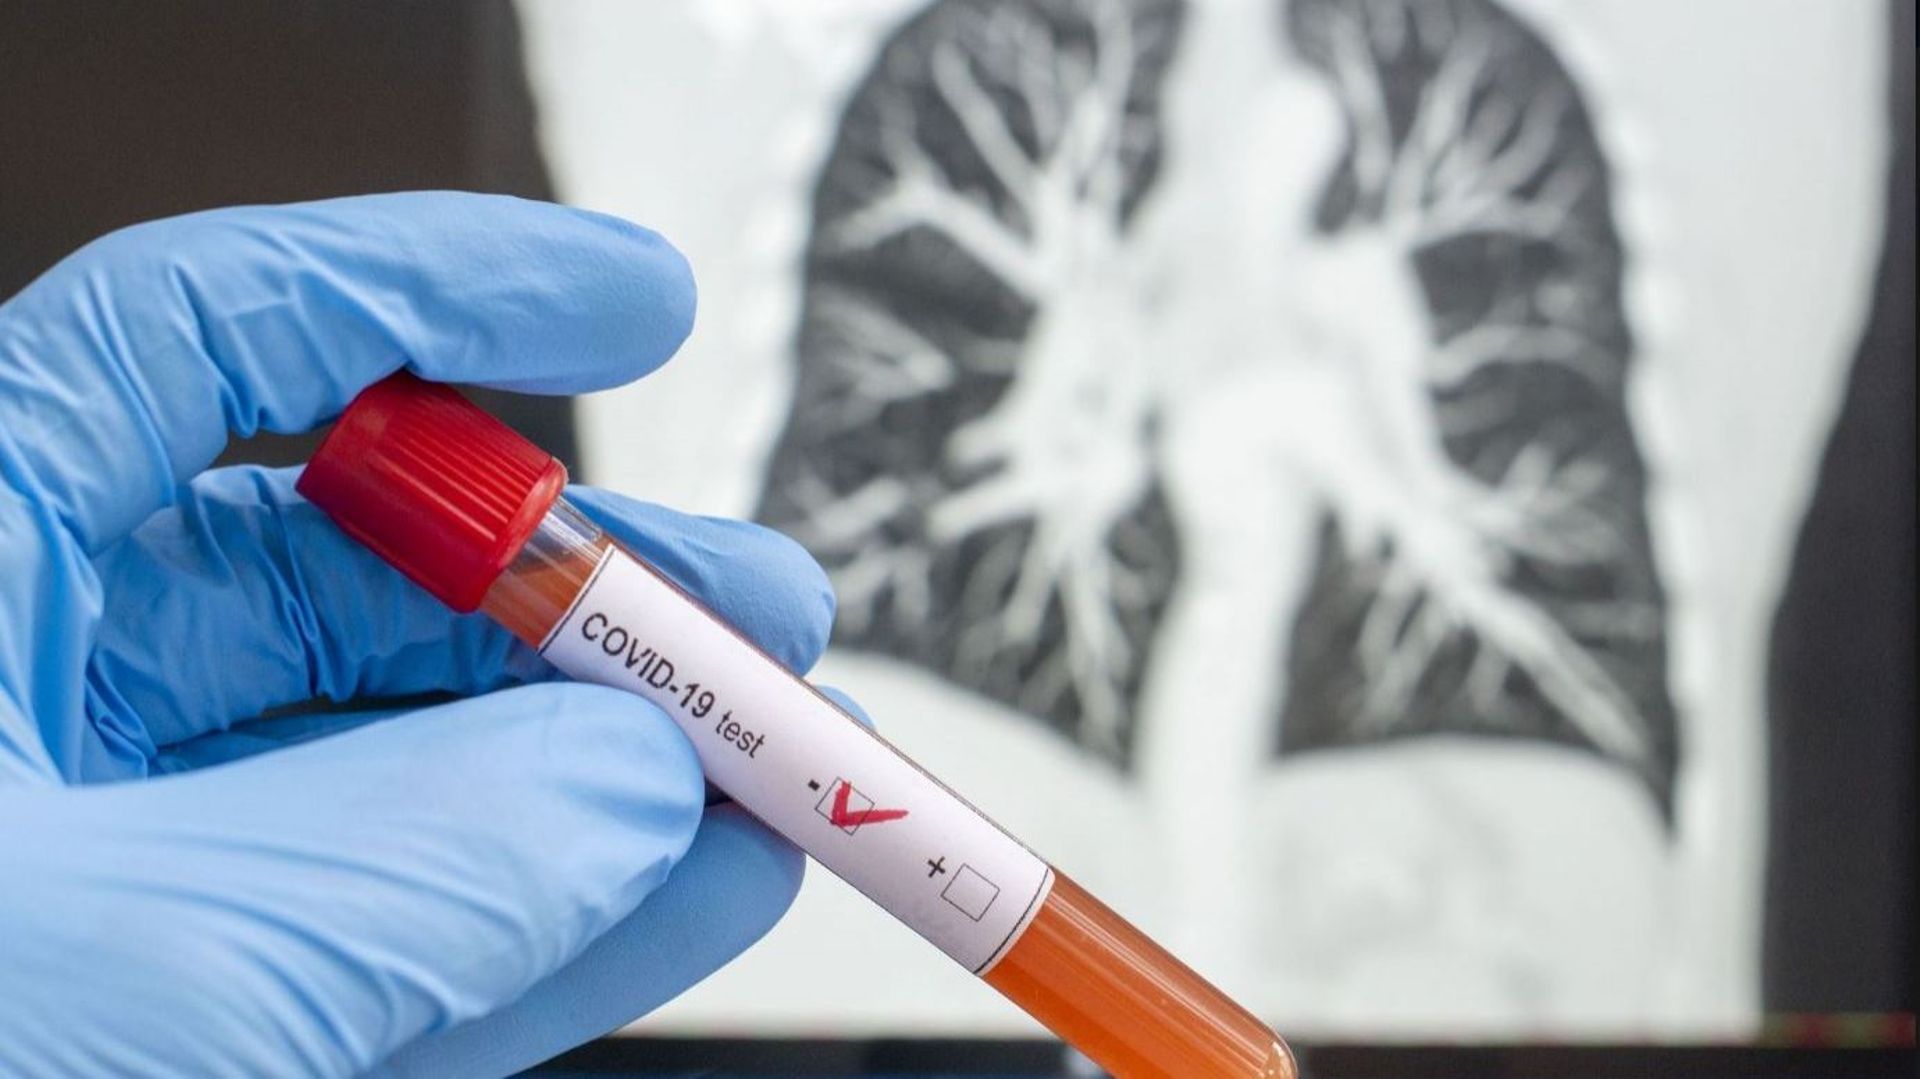 Coronavirus - La Région bruxelloise veut doubler la capacité de tests d'ici septembre - A. Maron